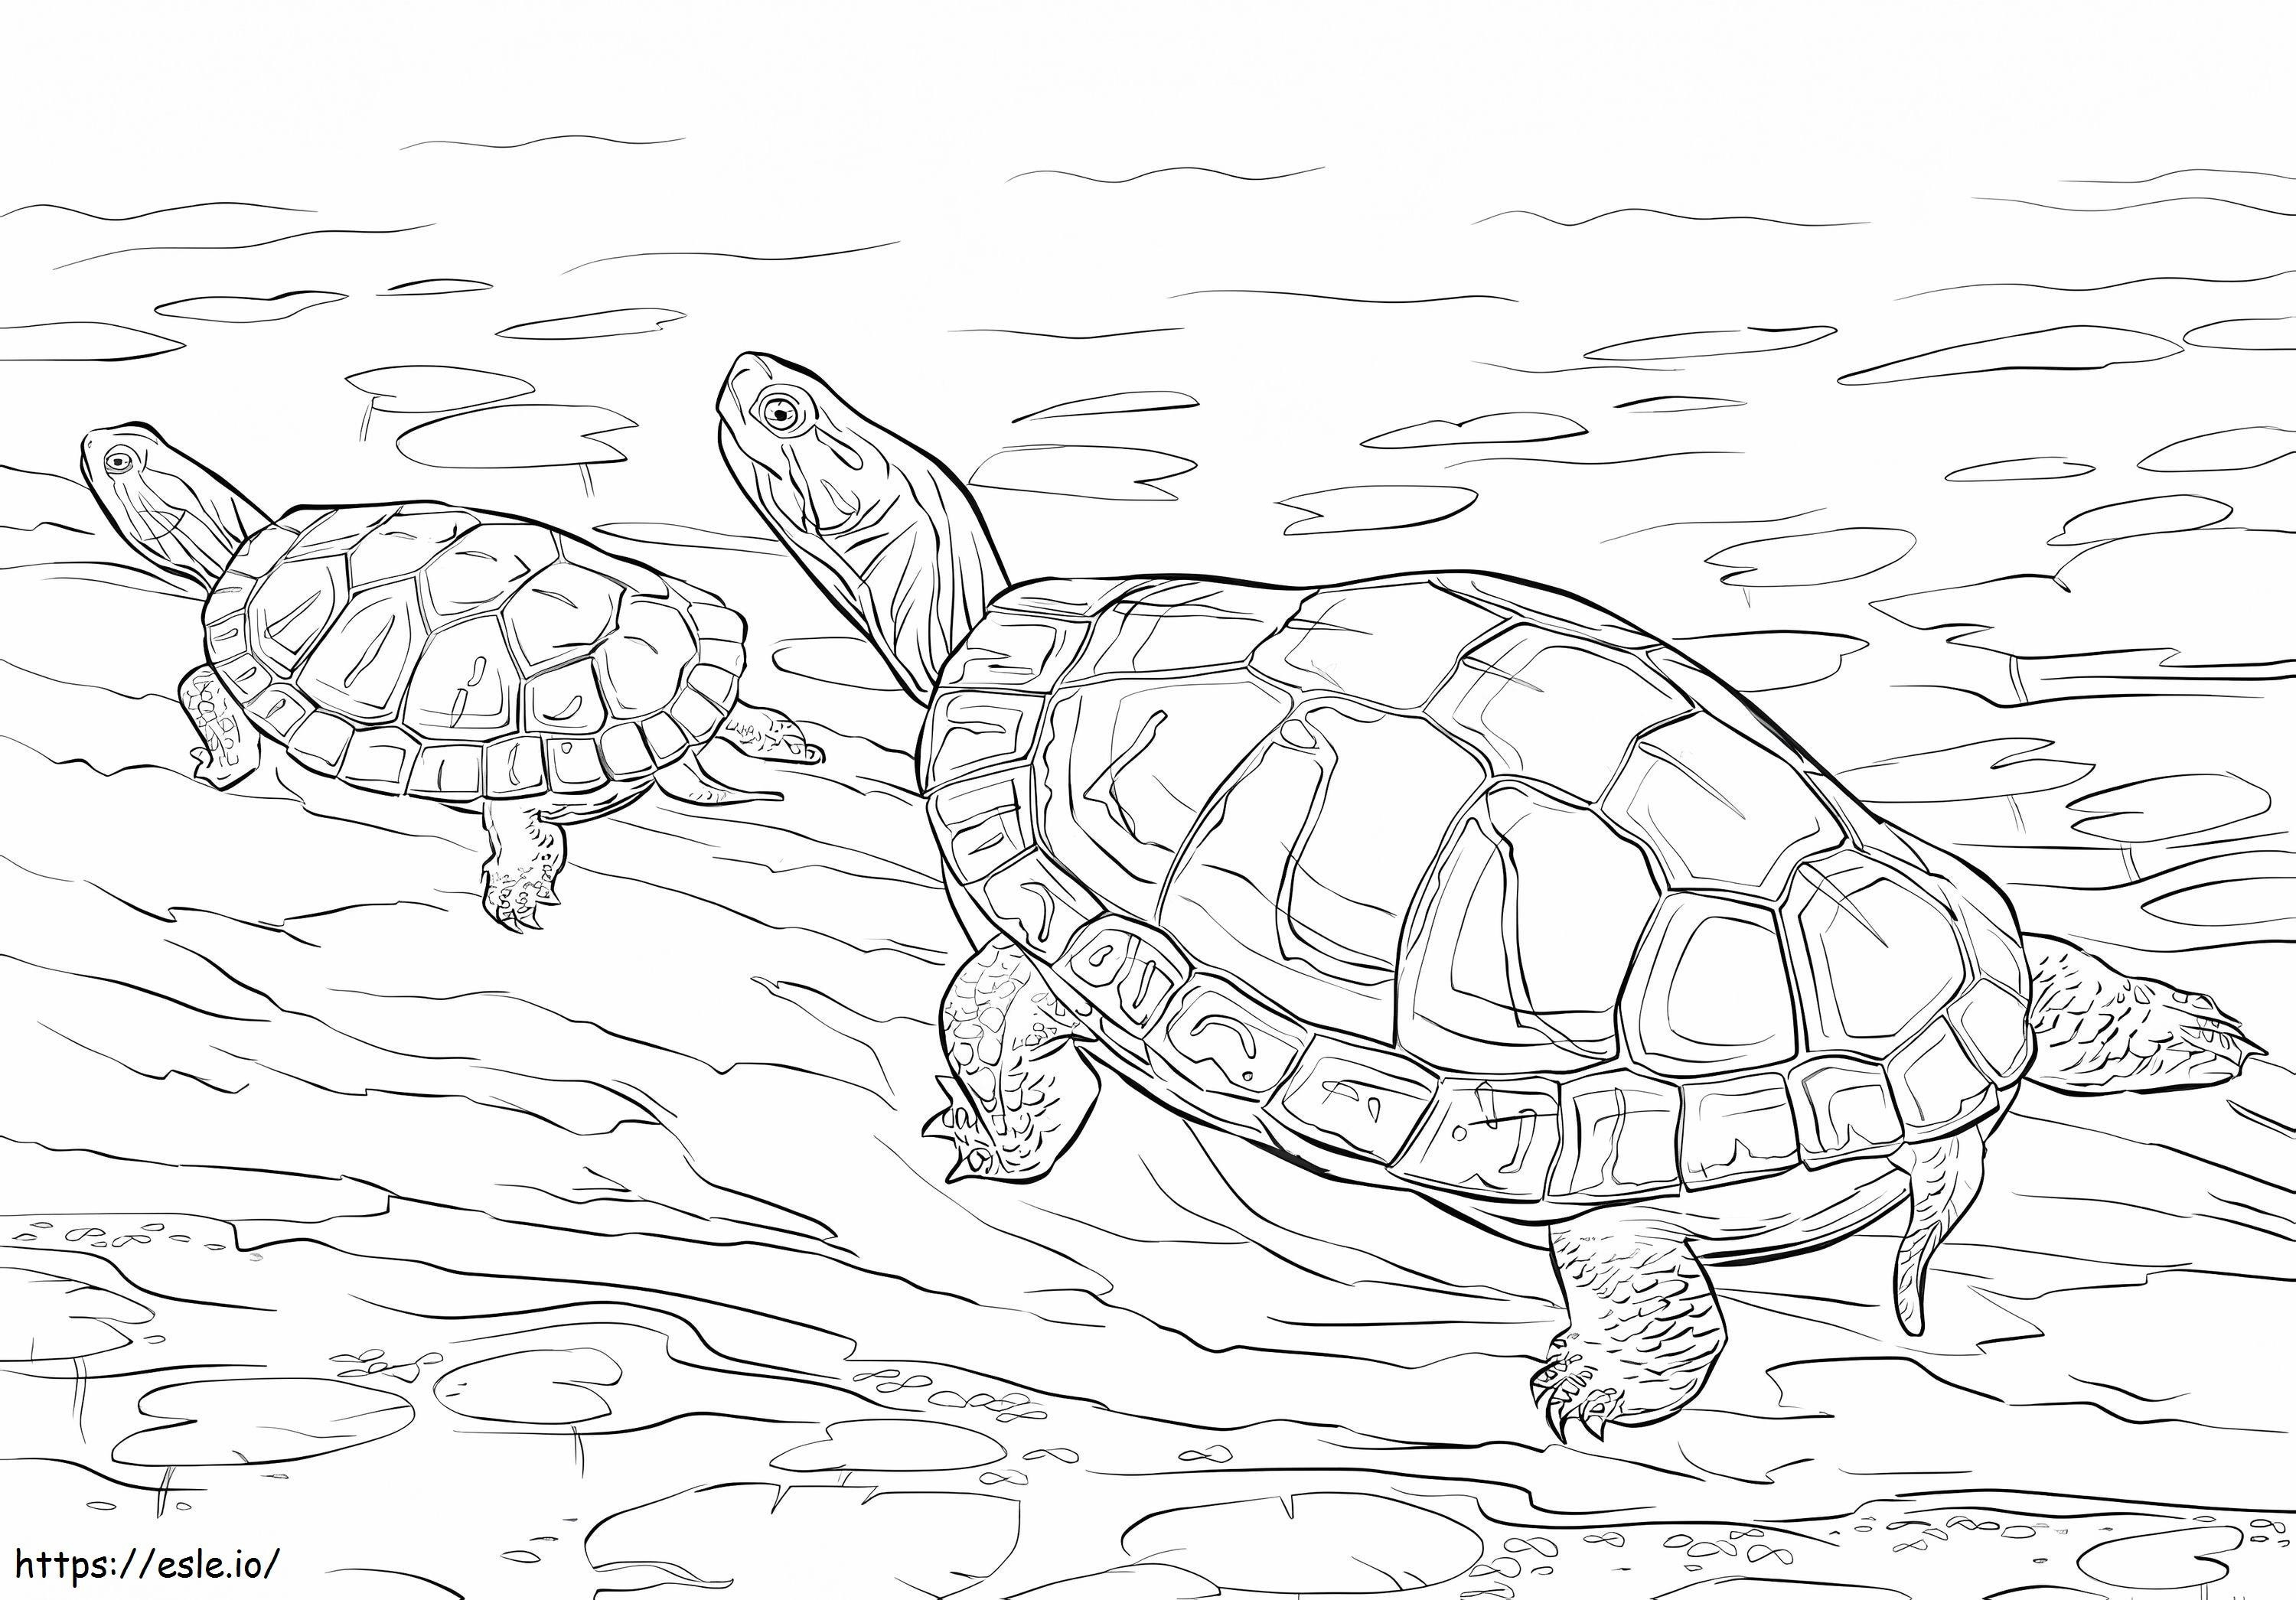 İki Boyalı Kaplumbağa boyama